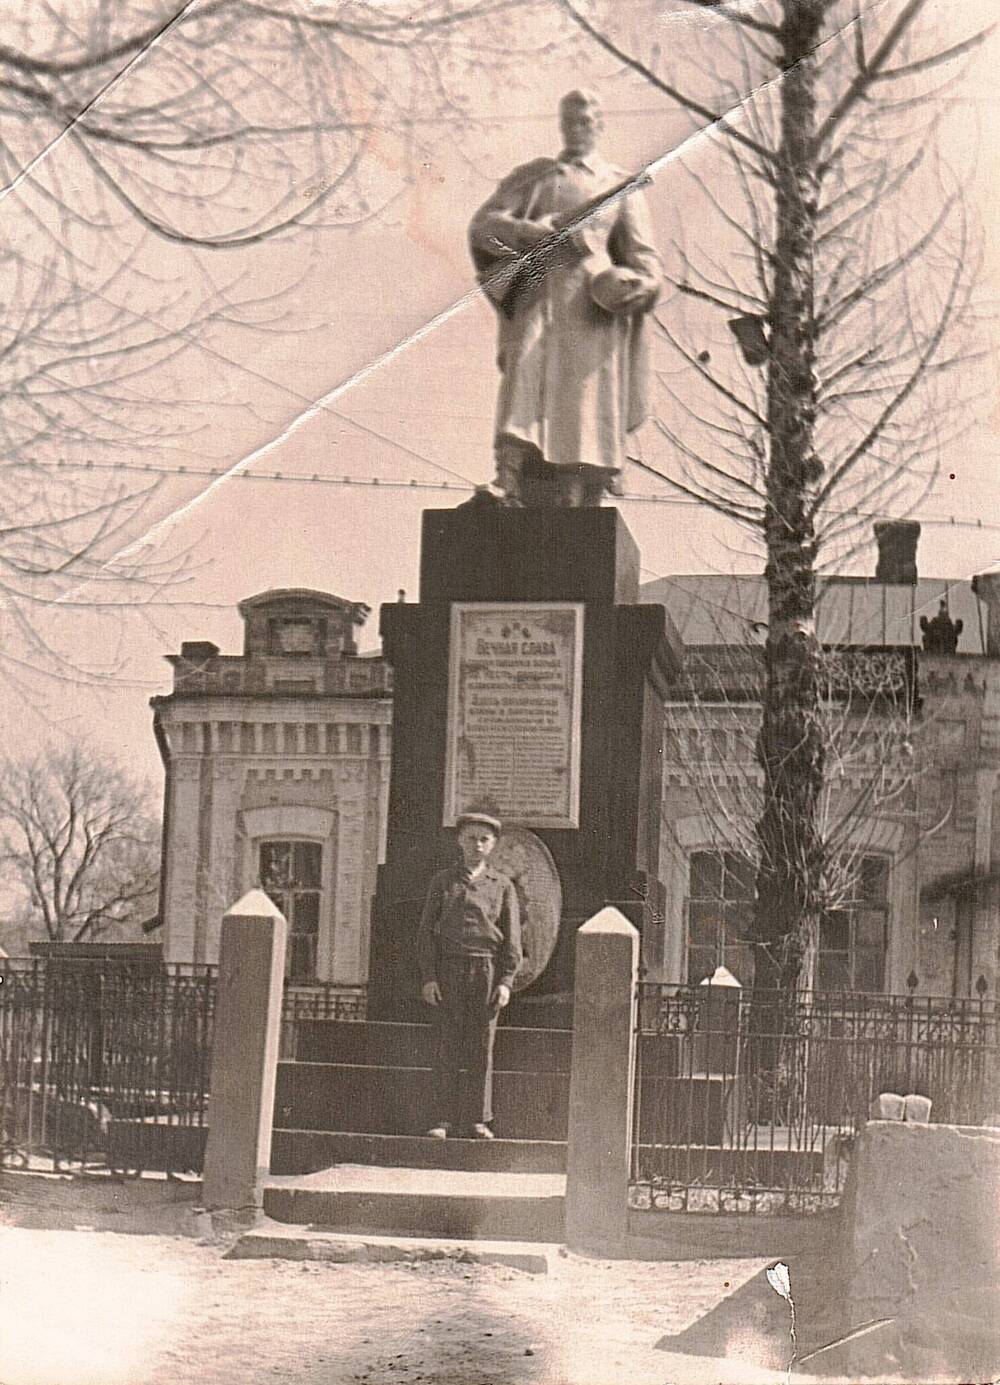 Фотография. Видовая. Запечатлен памятник погибшим советским воинам.